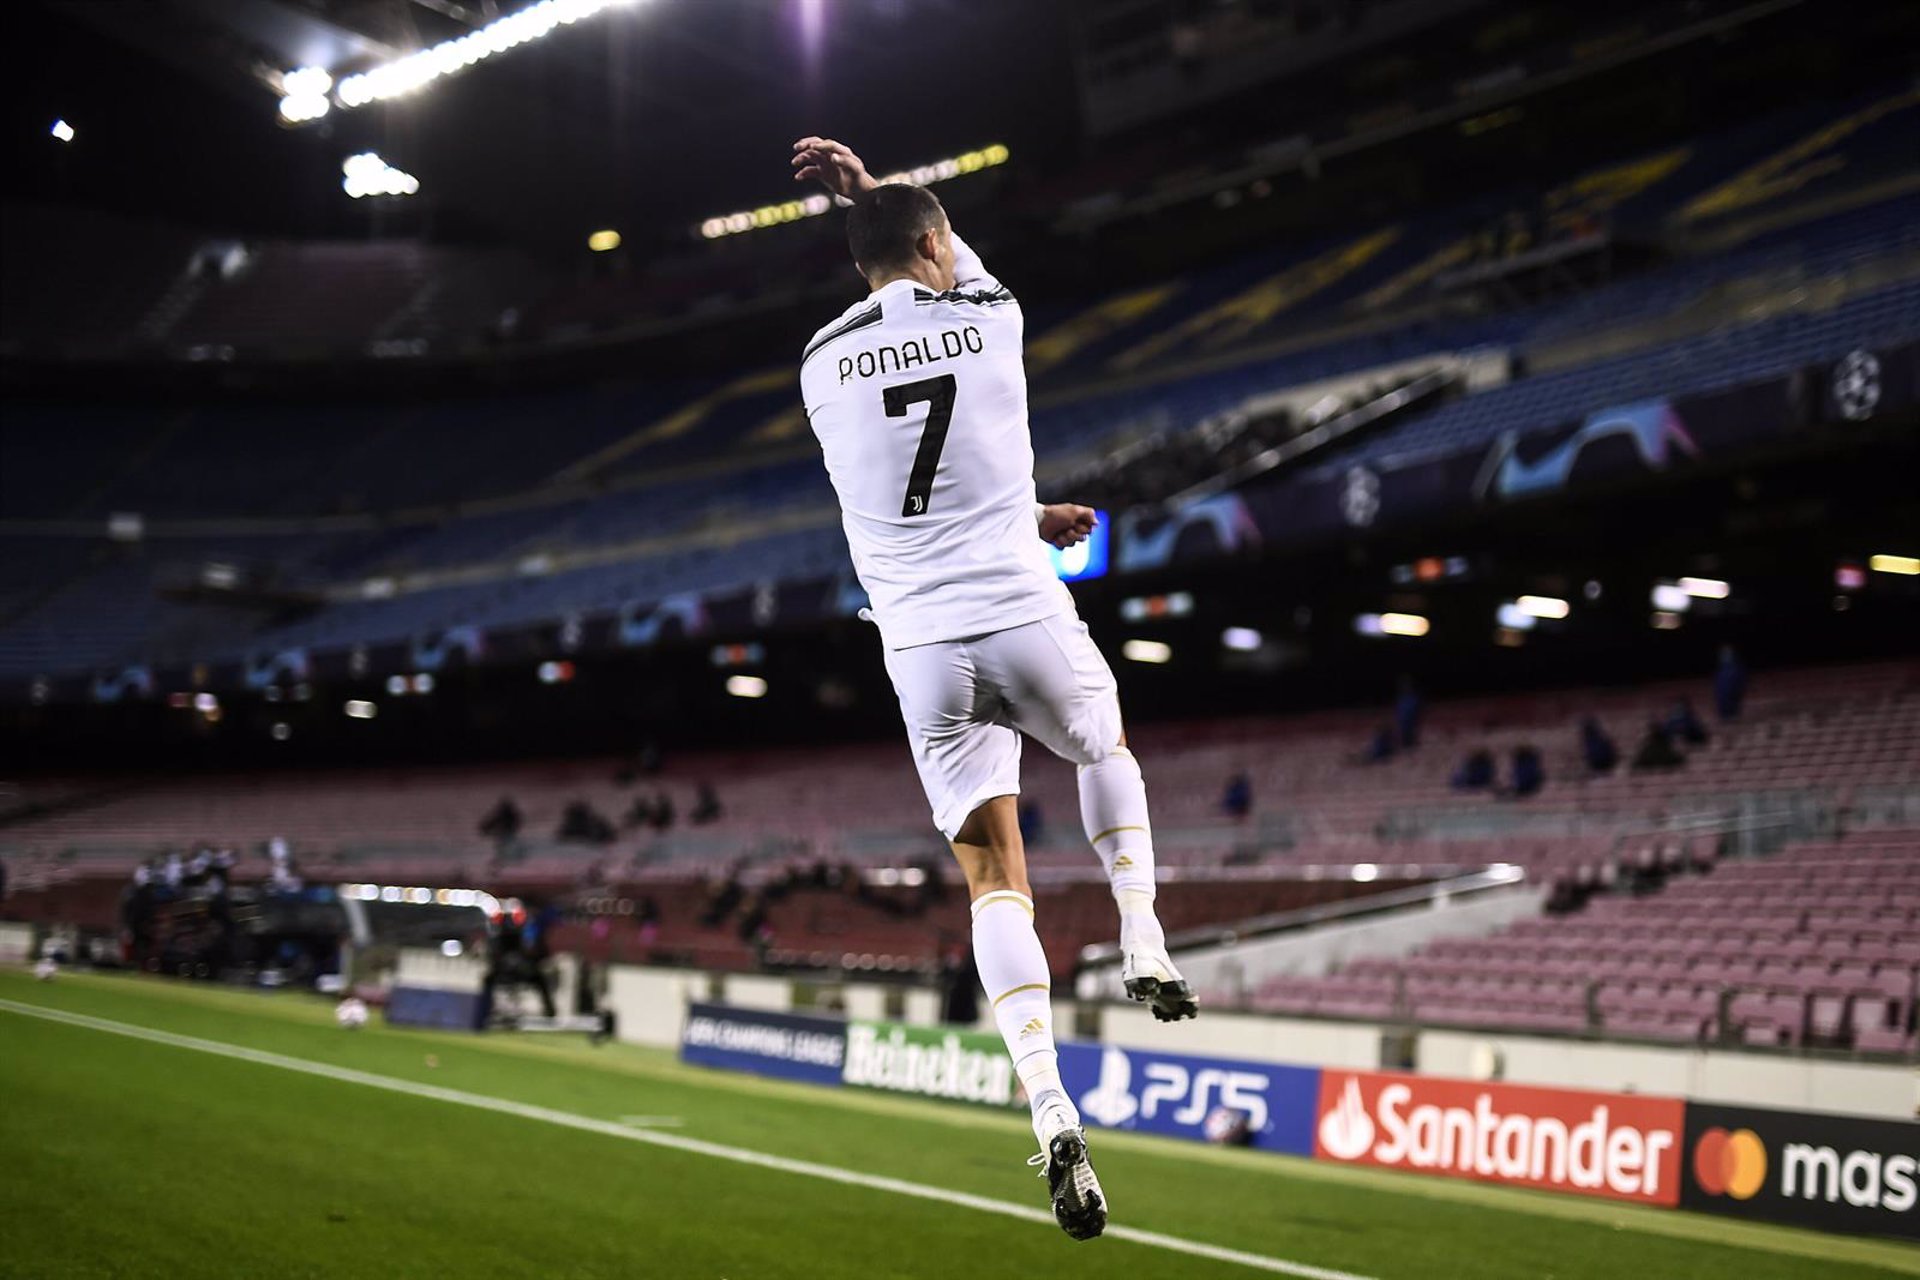 El Manchester United pagará 15+8 millones de euros por Ronaldo